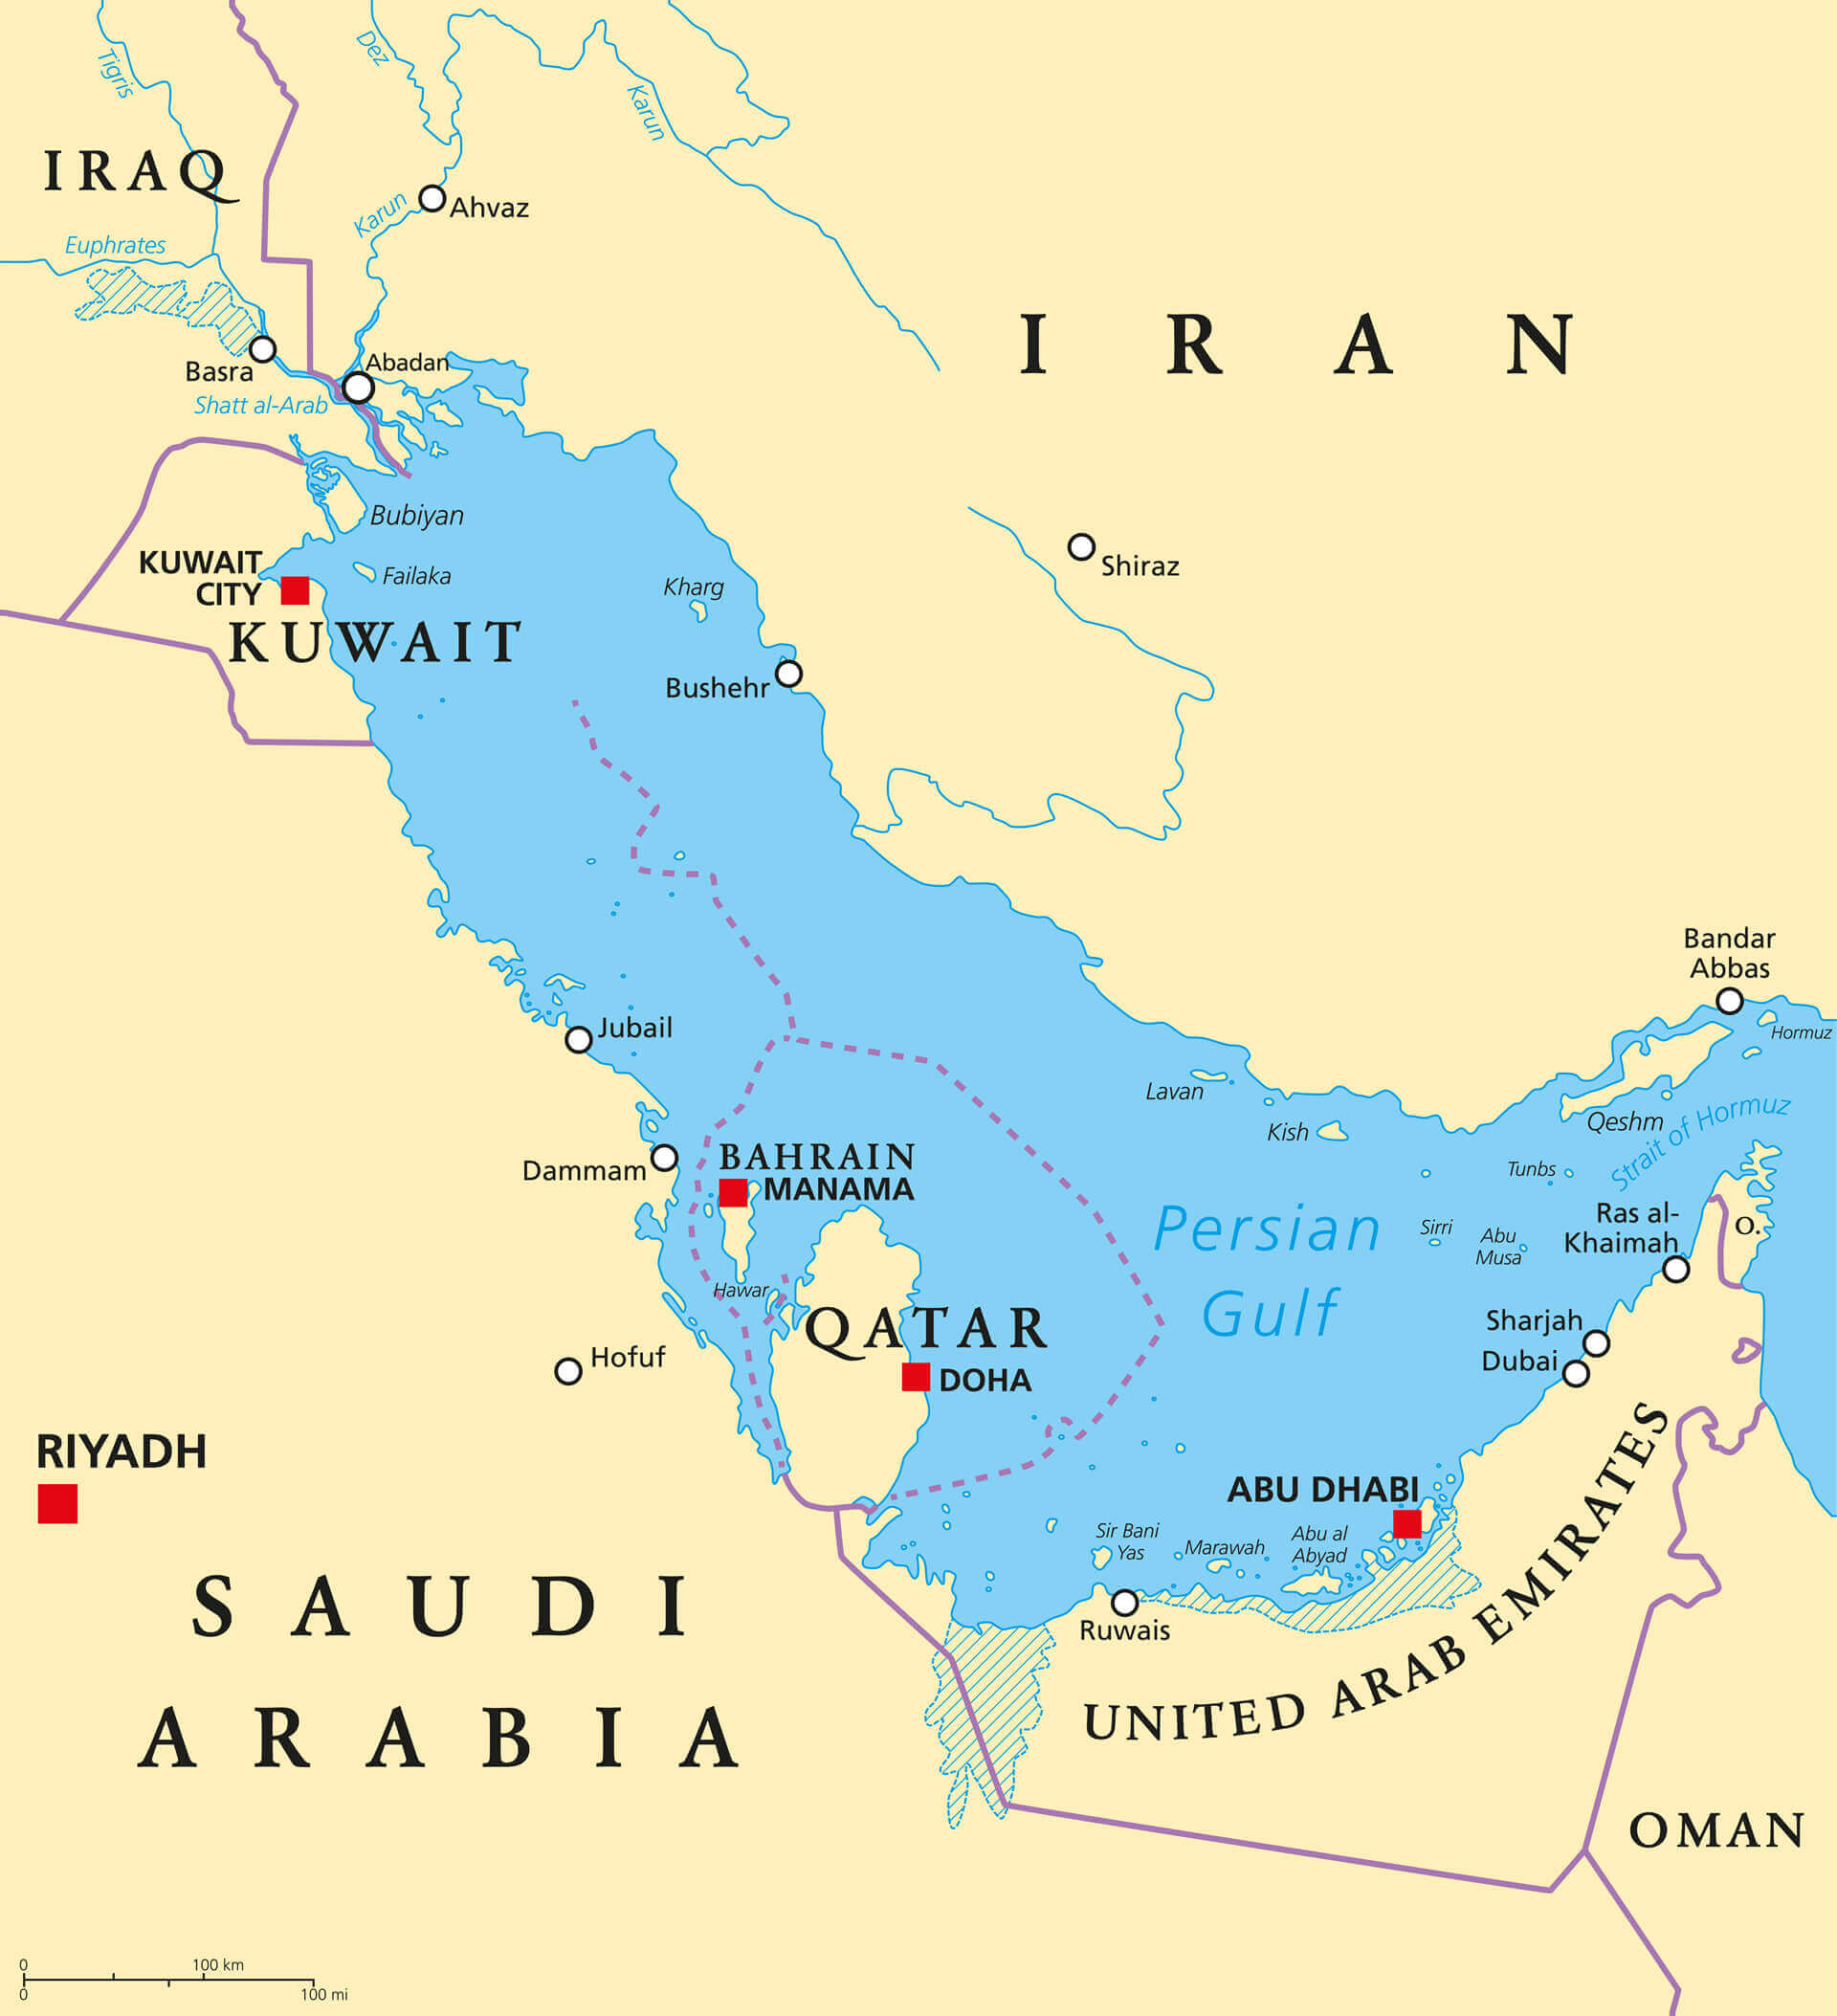 Korfez Bolgesi Ulkeleri Katar ile Siyasi Haritasi